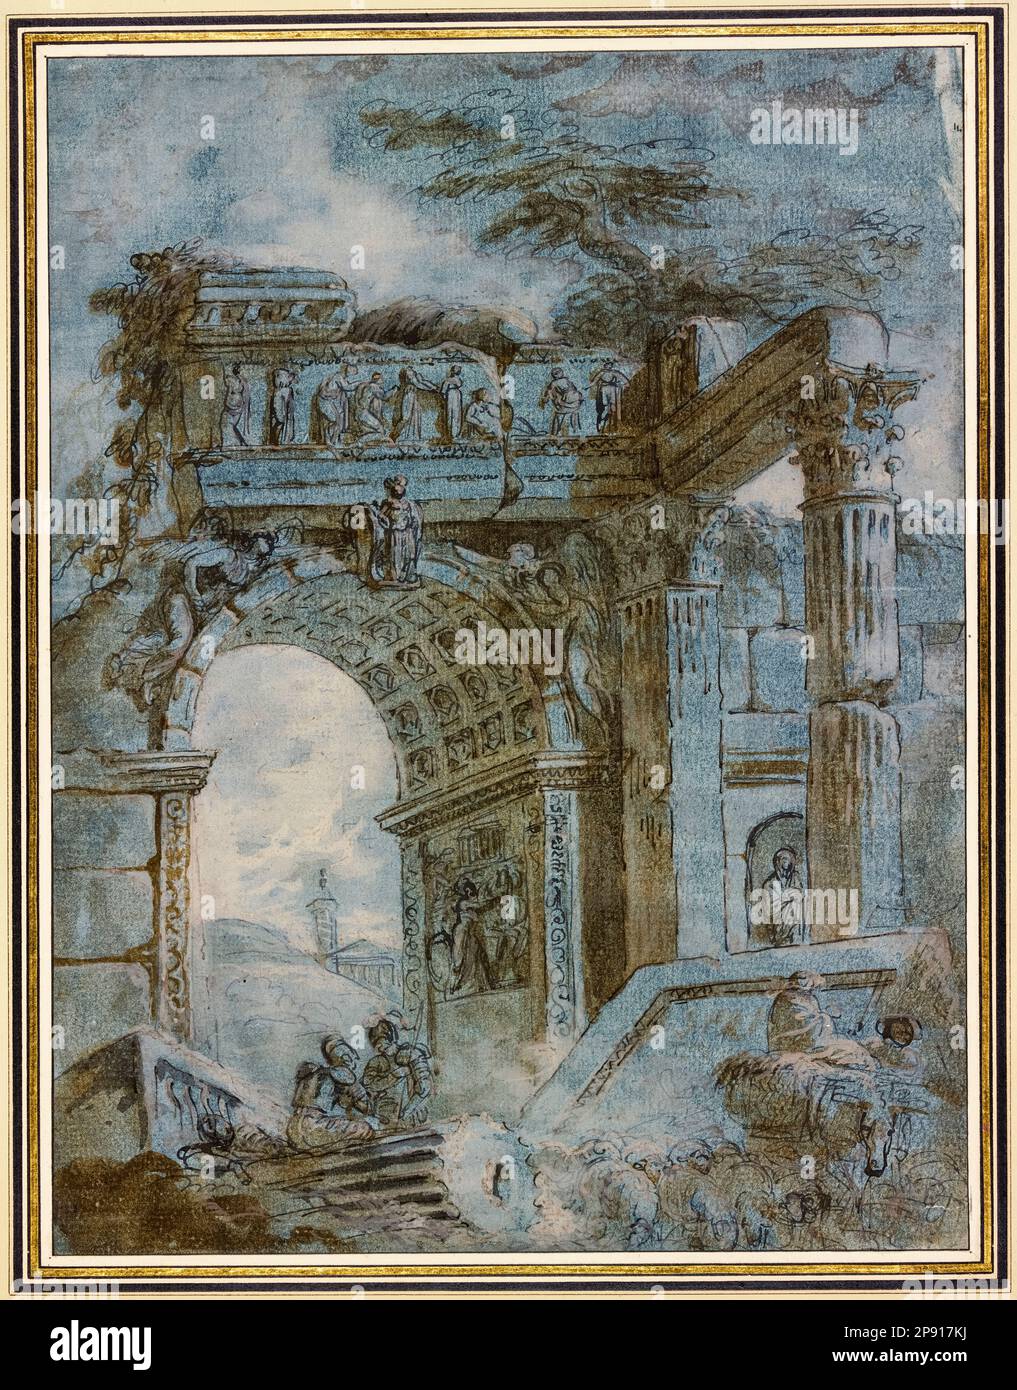 Hubert Robert, arche triomphale romaine, peinture au stylo et à l'encre au pinceau, avant 1808 Banque D'Images